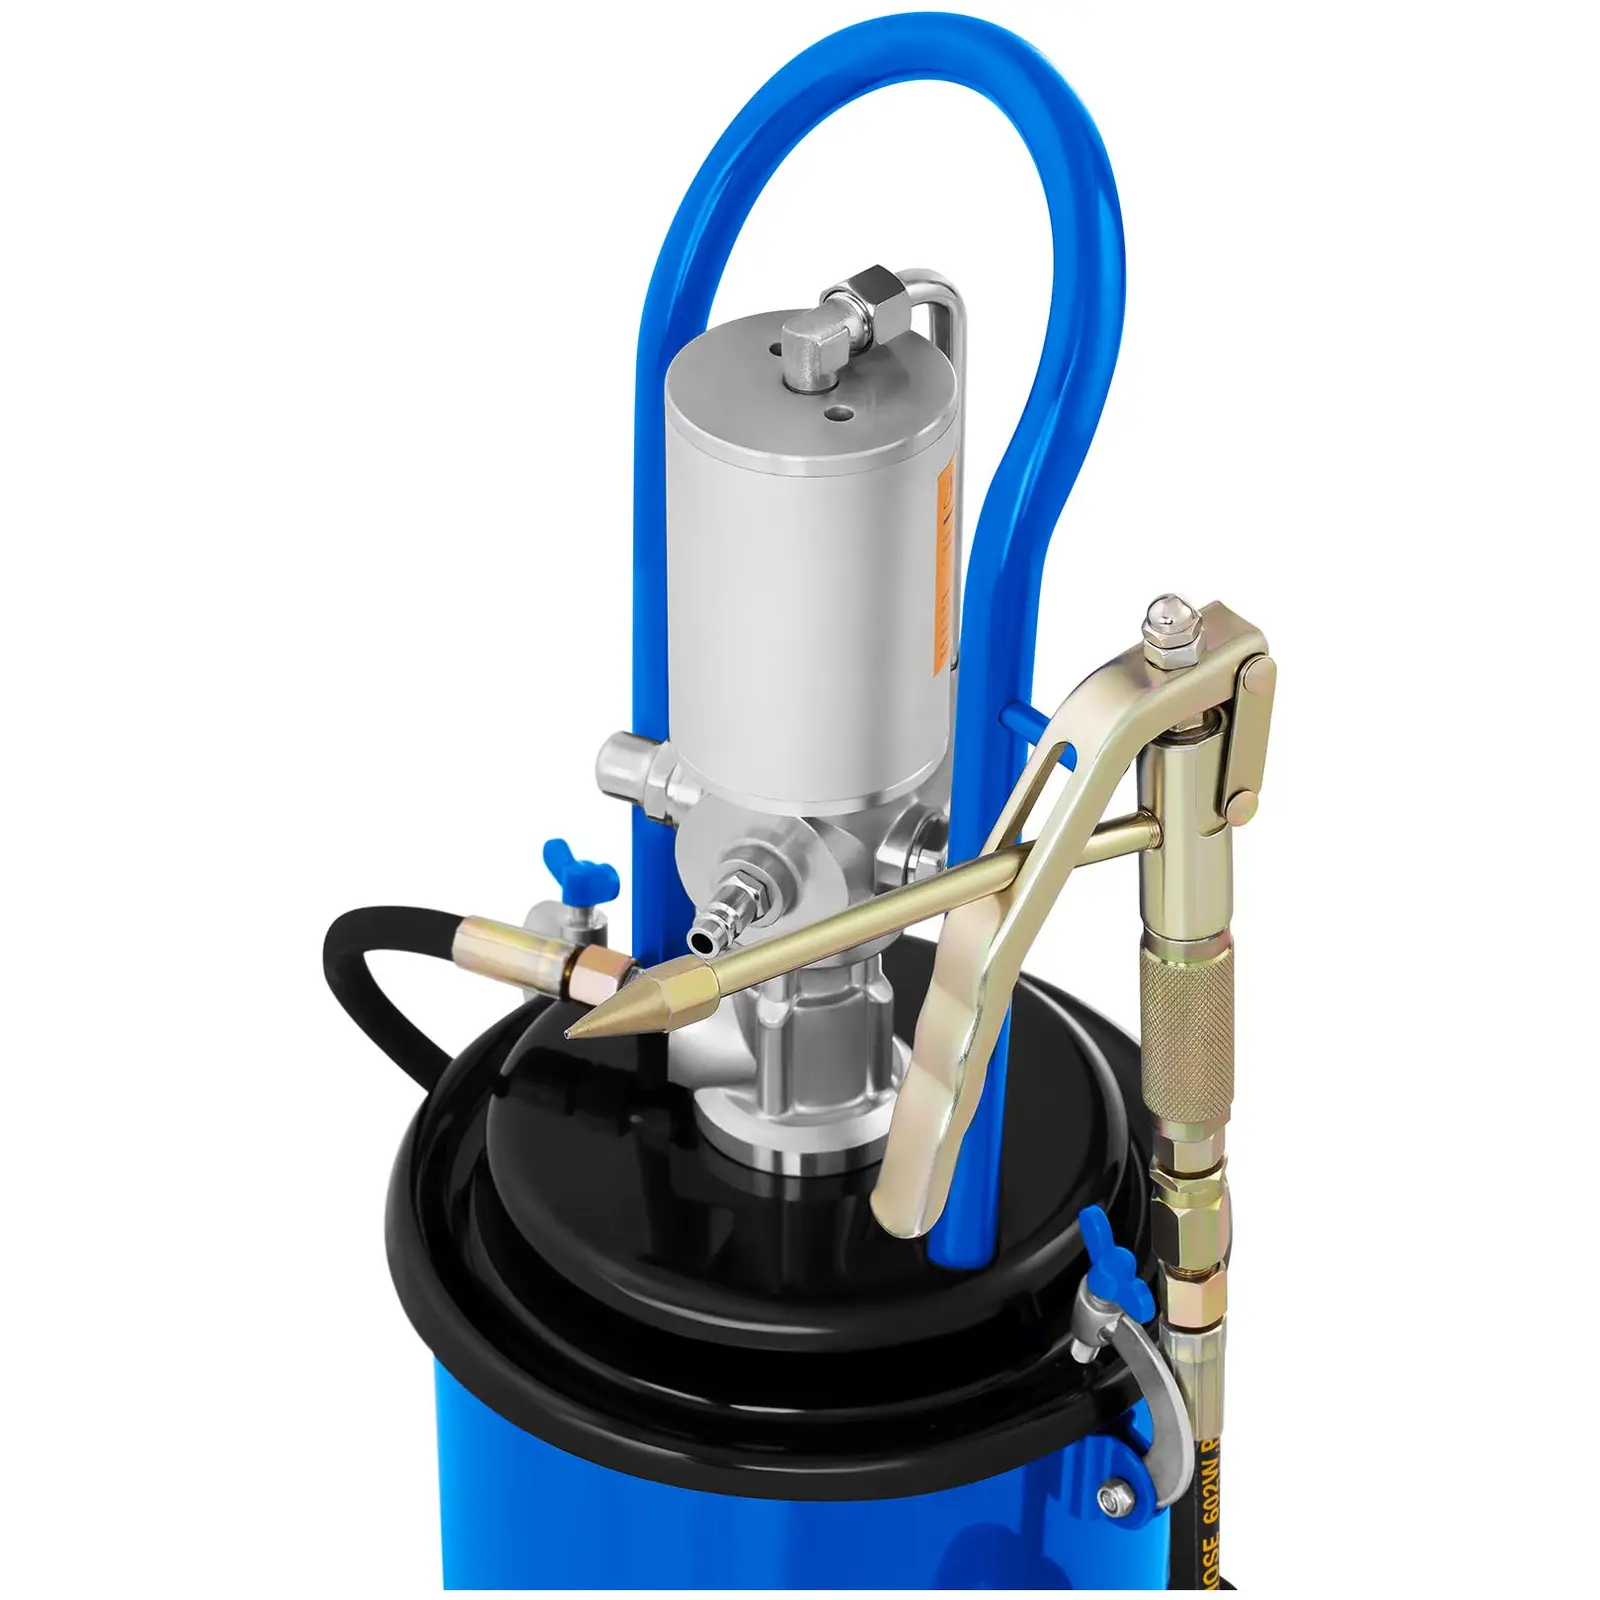 B-varer Pneumatisk fettsprøyte - 12 Liter - kjørbar - 240-320 bar pumpetrykk